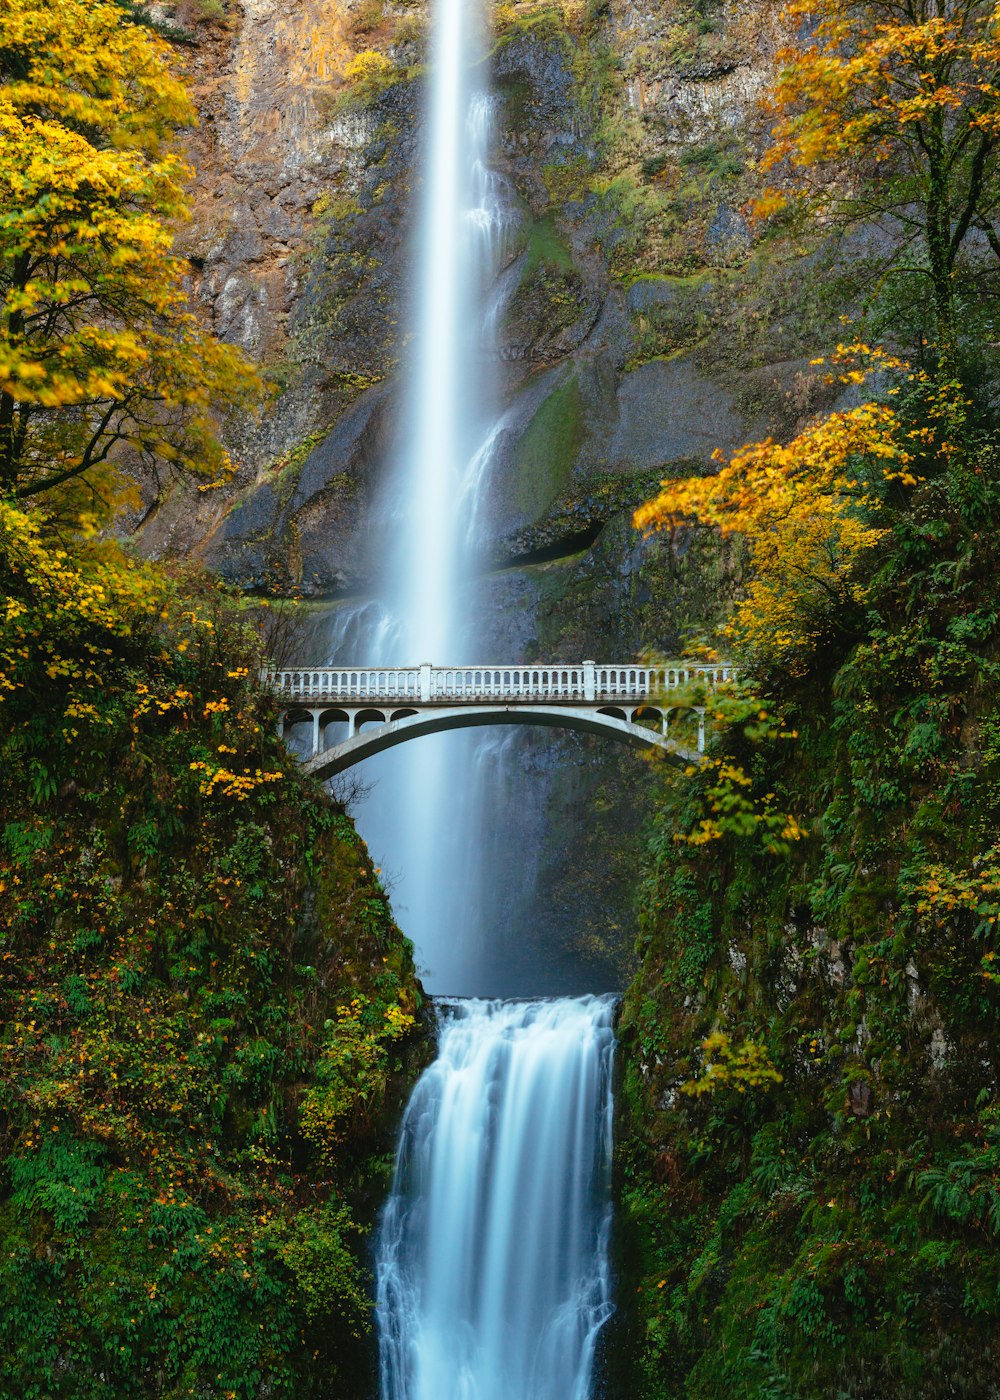 bridge in between trees photo – Free Waterfall Image on Unsplash